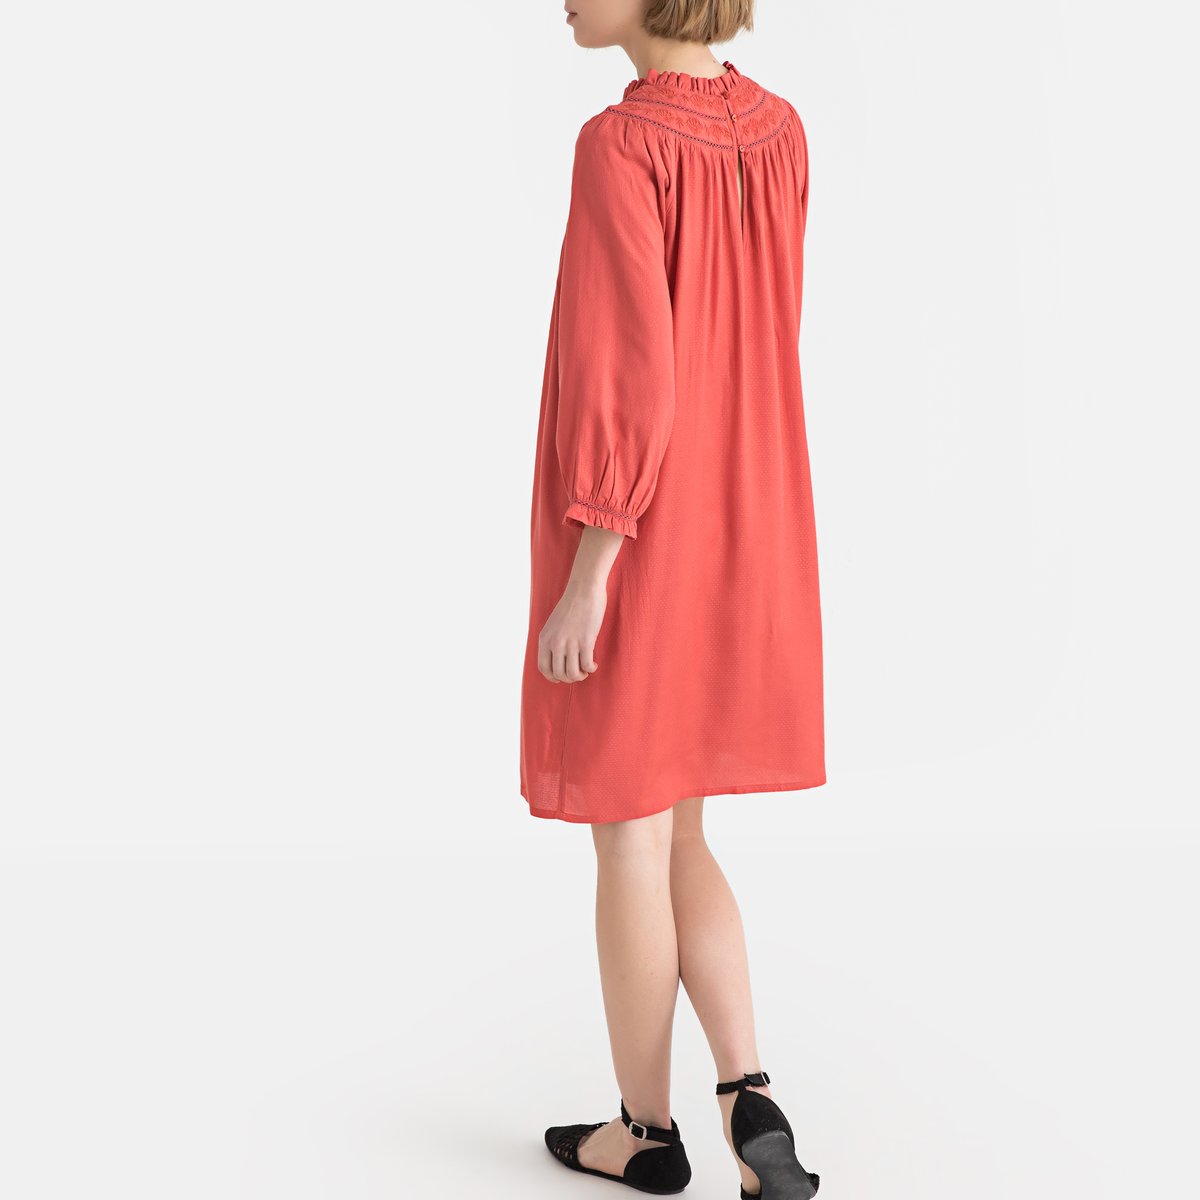 Платье La Redoute Расклешенное с длинными рукавами 36 (FR) - 42 (RUS) розовый, размер 36 (FR) - 42 (RUS) Расклешенное с длинными рукавами 36 (FR) - 42 (RUS) розовый - фото 4